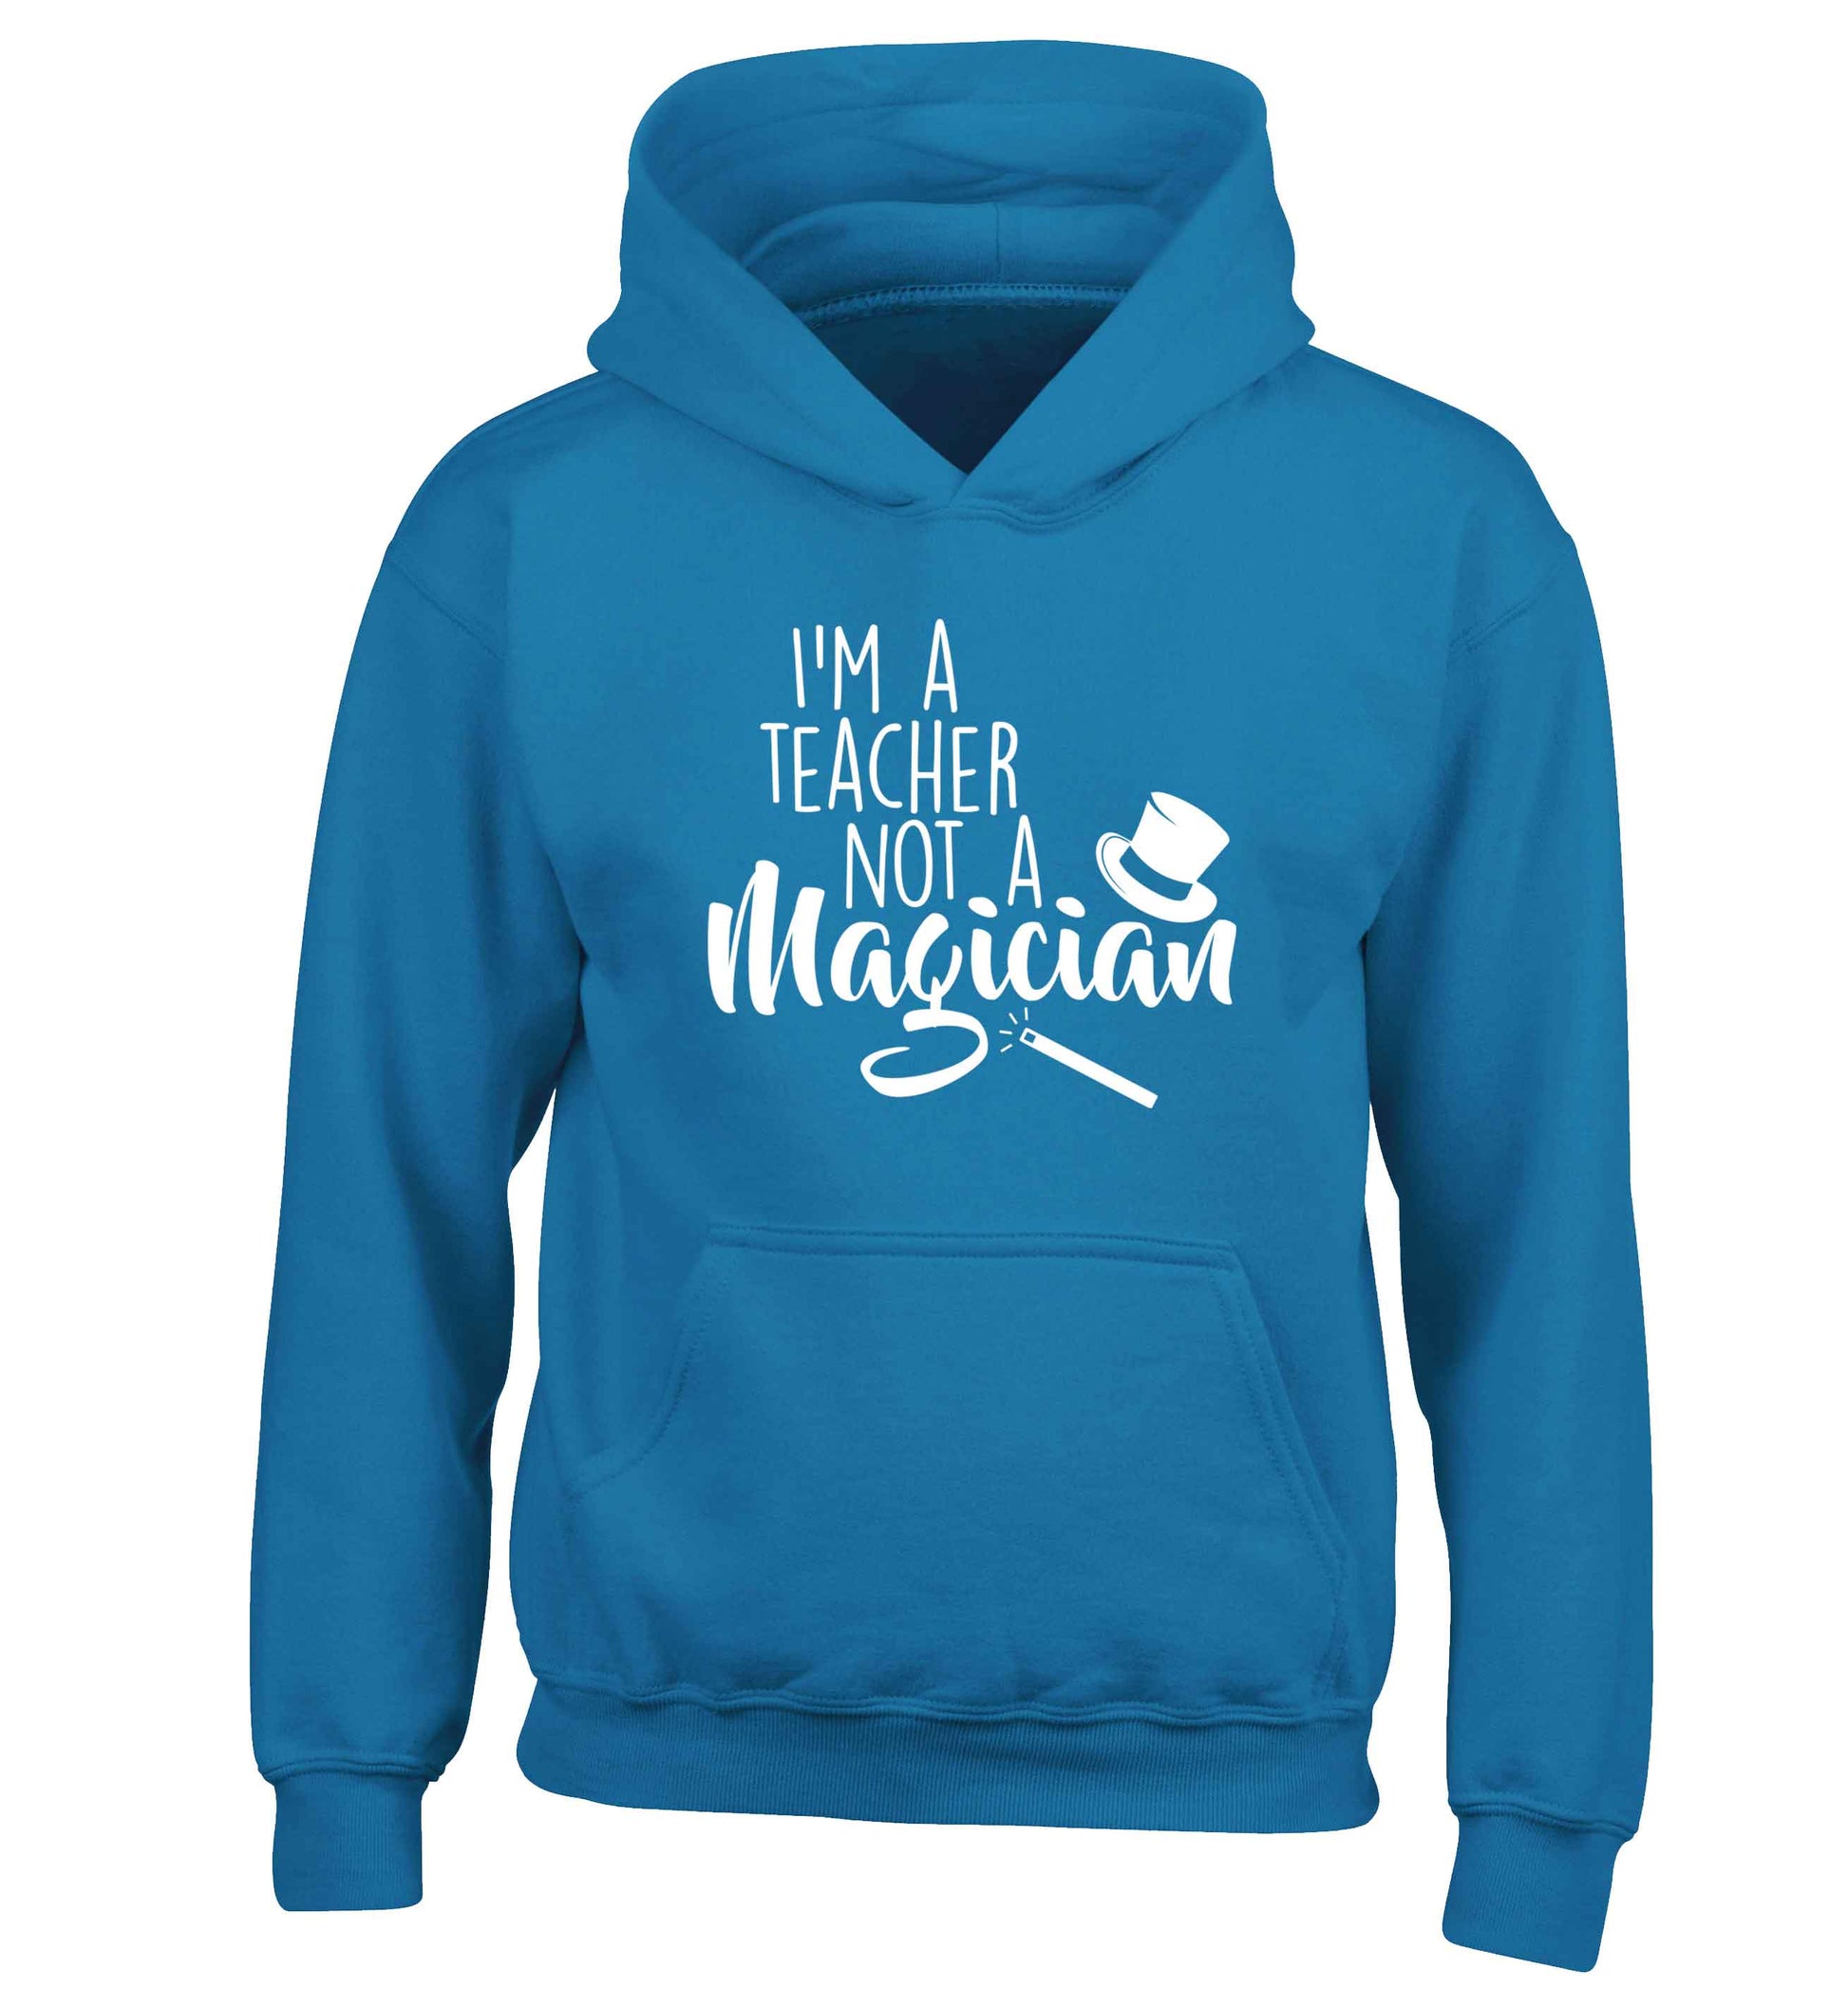 I'm a teacher not a magician children's blue hoodie 12-13 Years